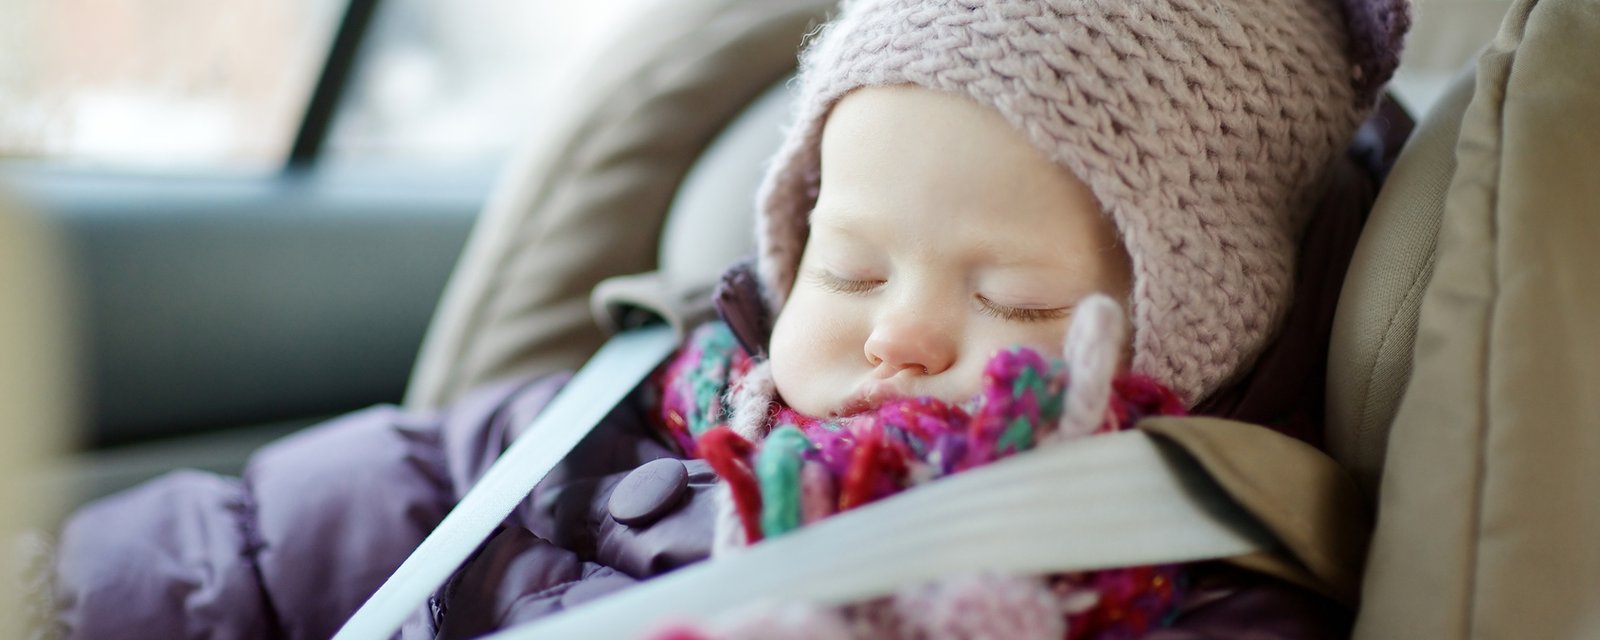 Voici pourquoi vous ne devriez jamais mettre un manteau d'hiver à un bébé en voiture